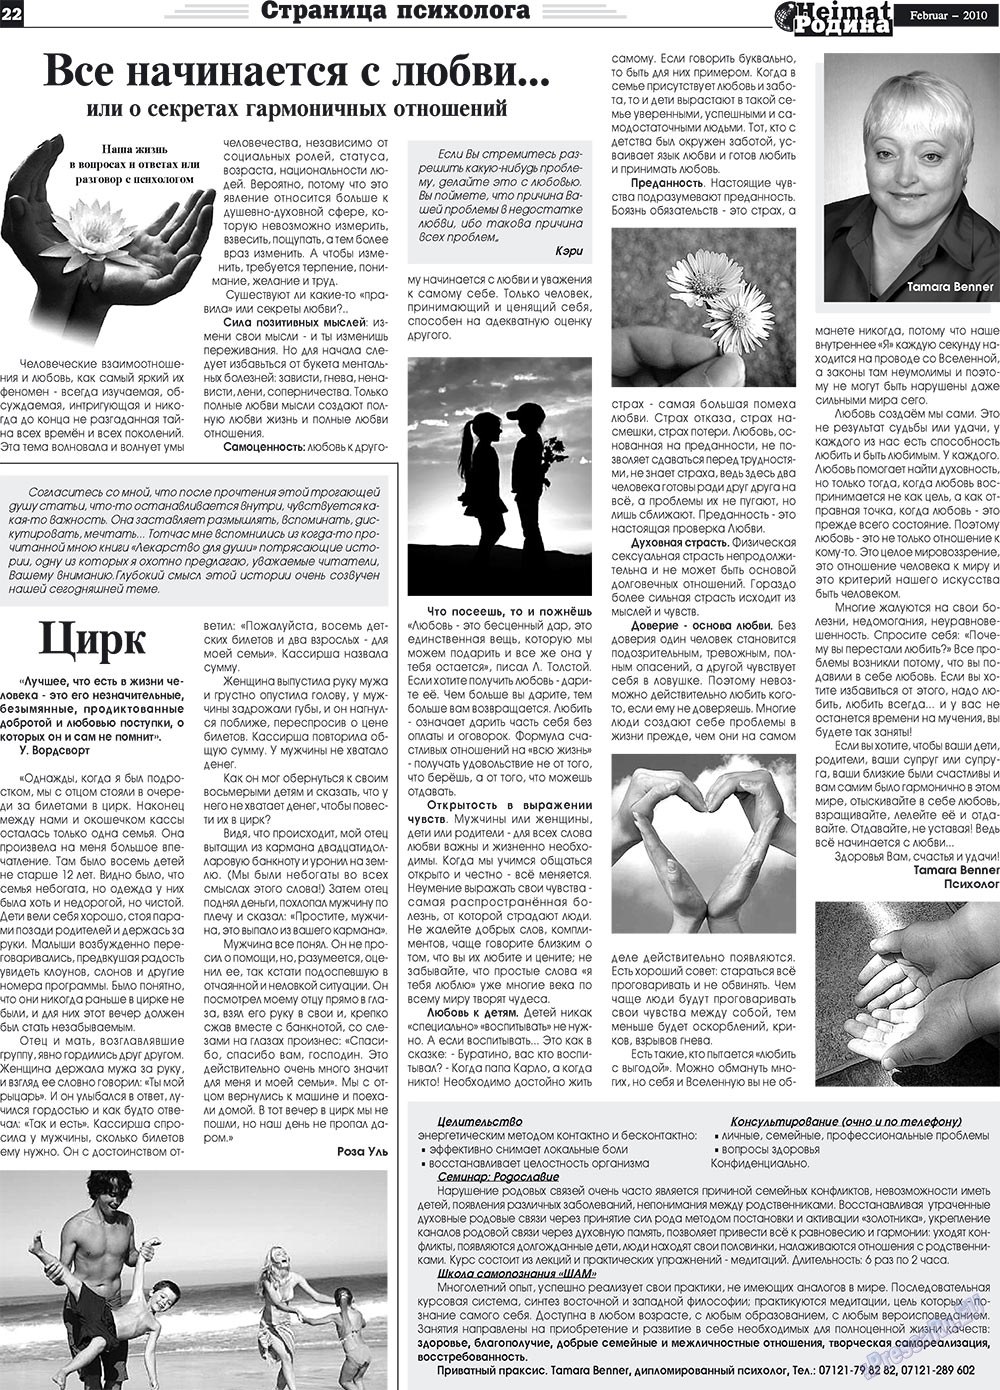 Heimat-Родина (газета). 2010 год, номер 2, стр. 22